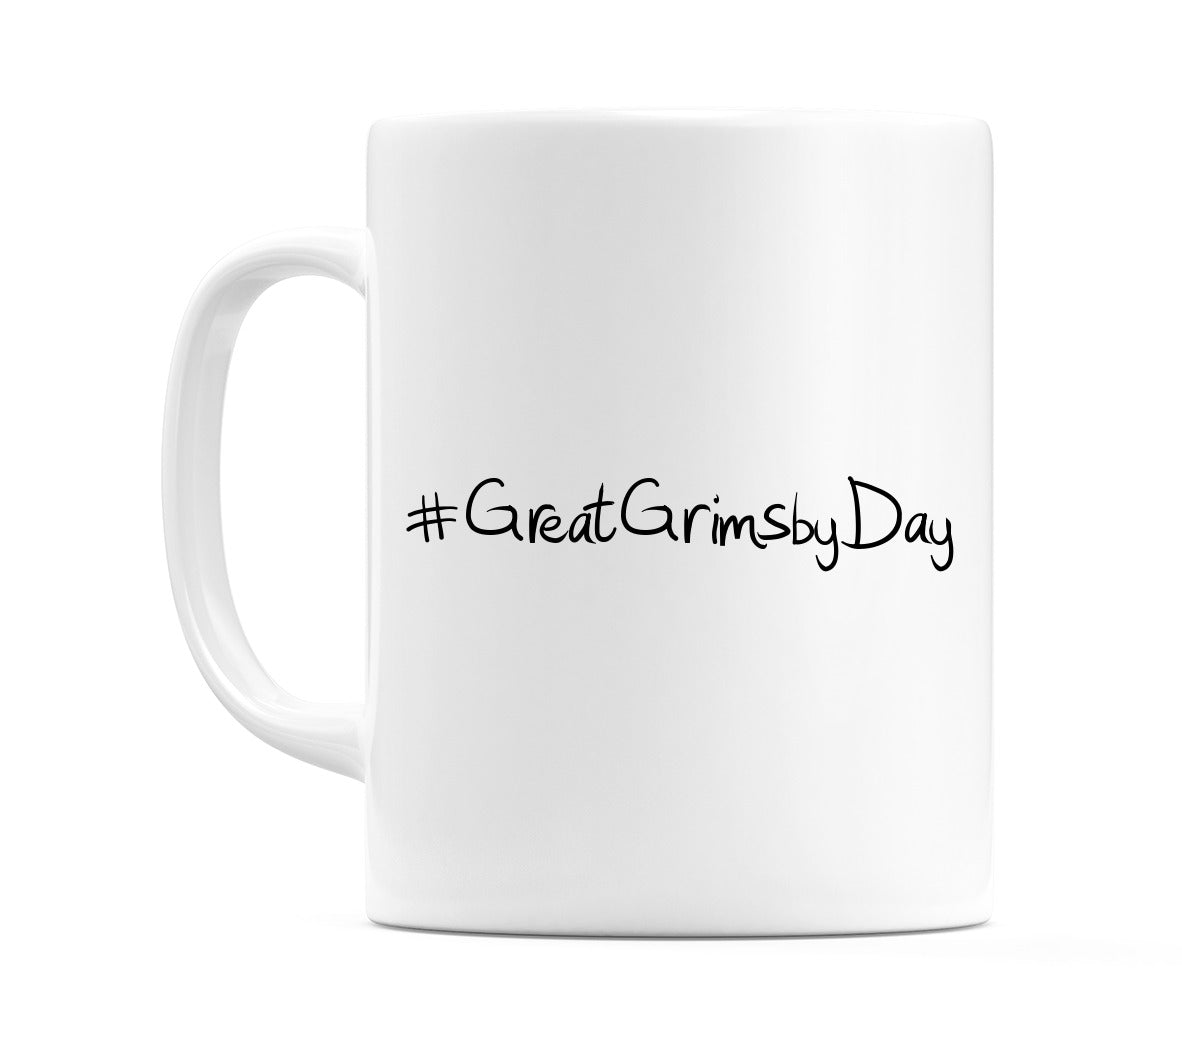 #GreatGrimsbyDay Mug